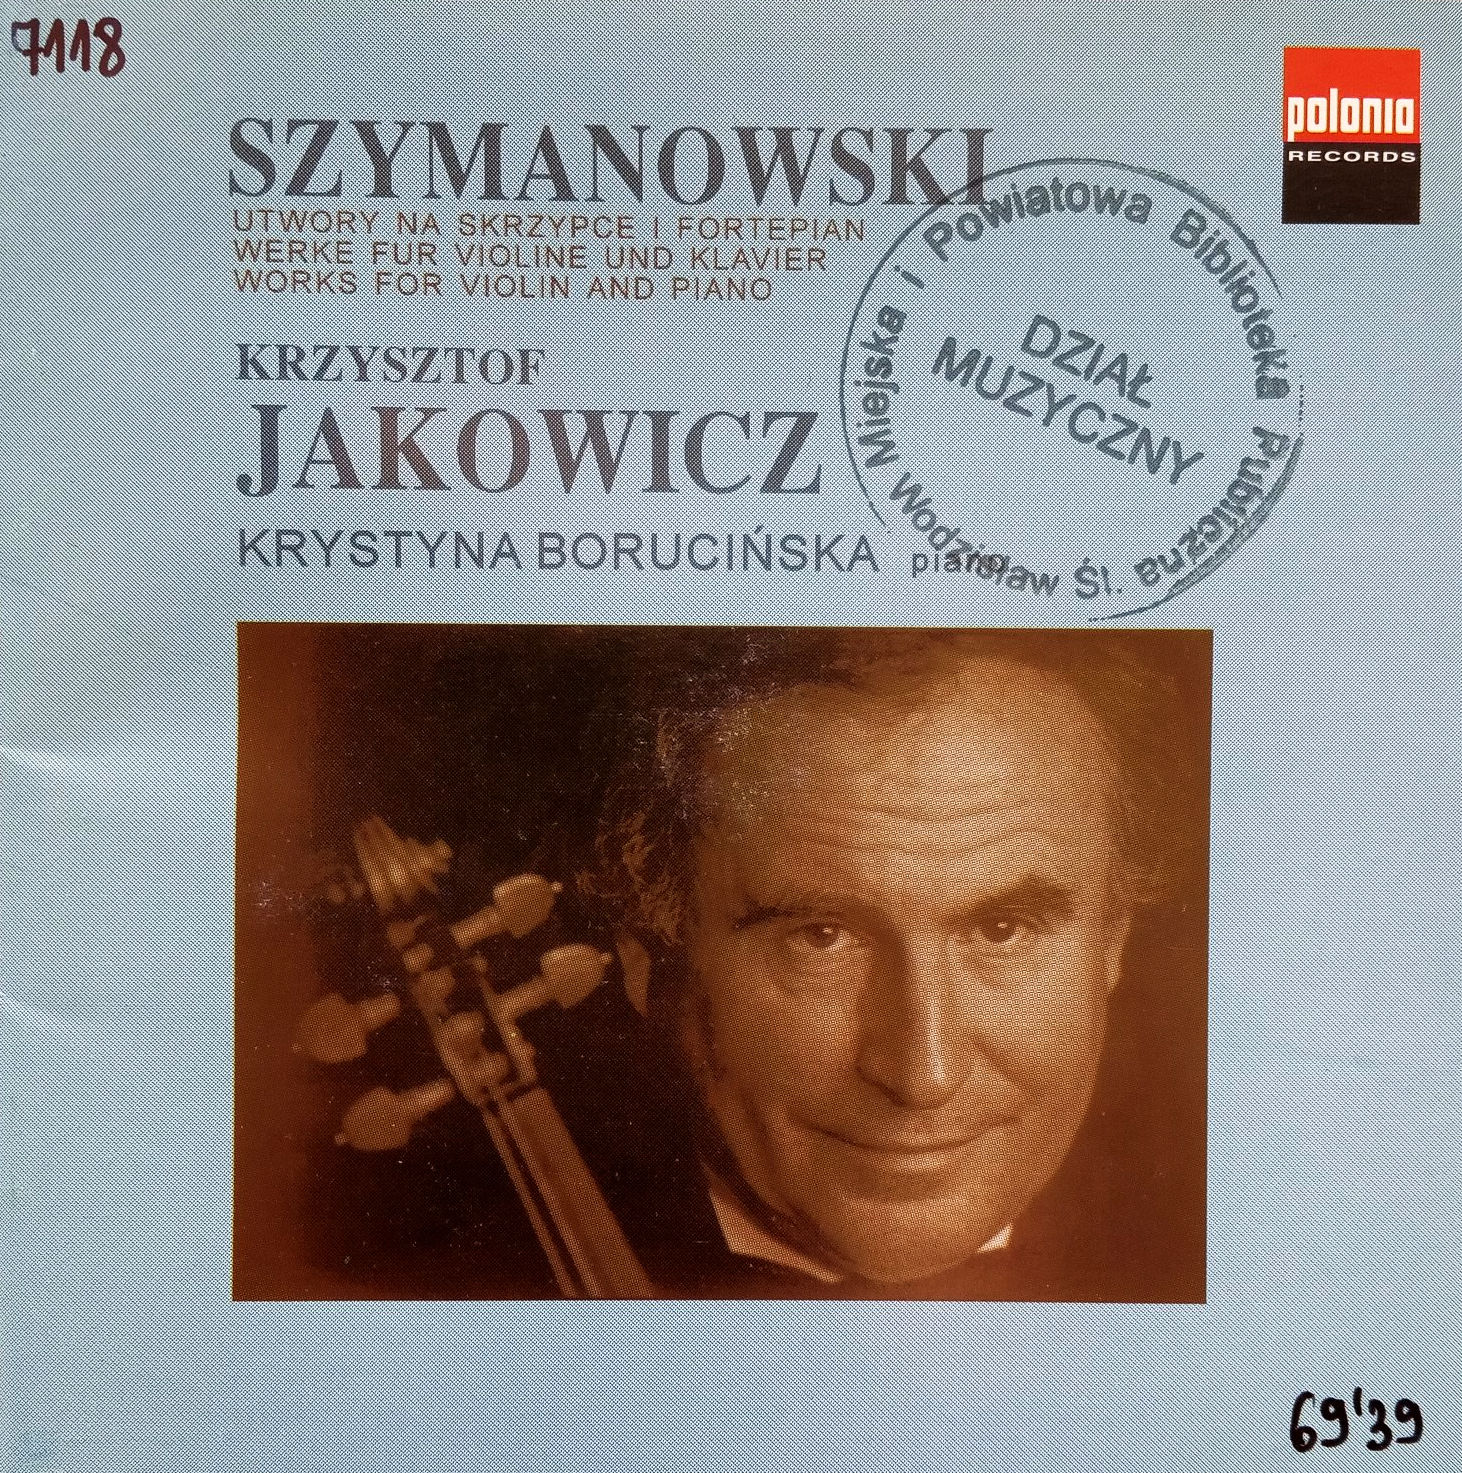 SZYMANOWSKI KAROL – Works For Violin And Piano